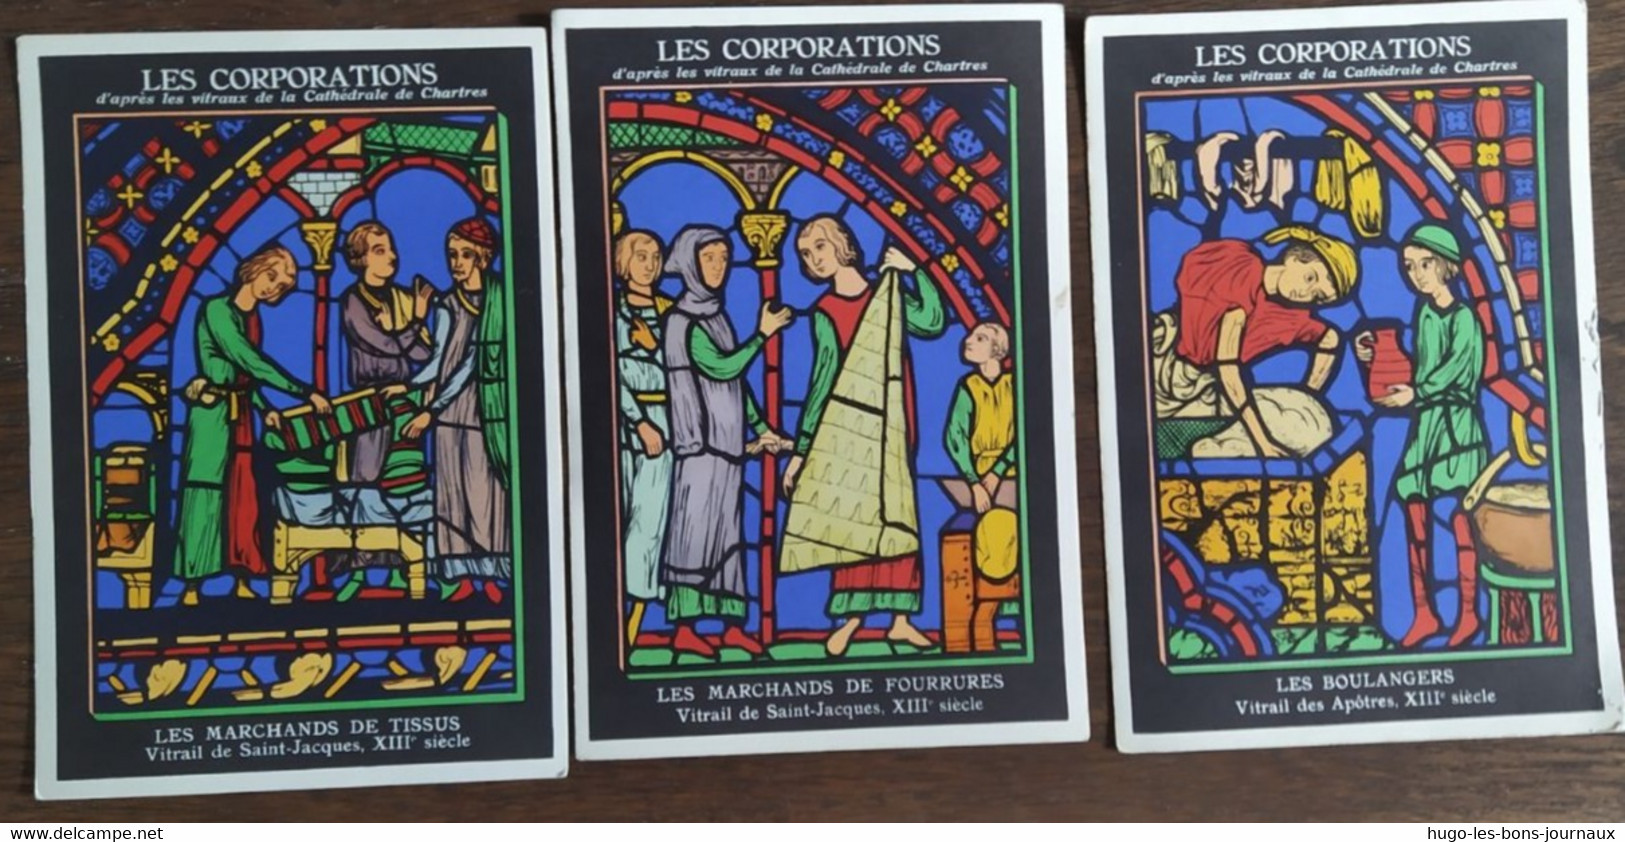 lot de 15 Cartes postales_Les Corpporations_Vitraux de la Cathédrale de Chartres_